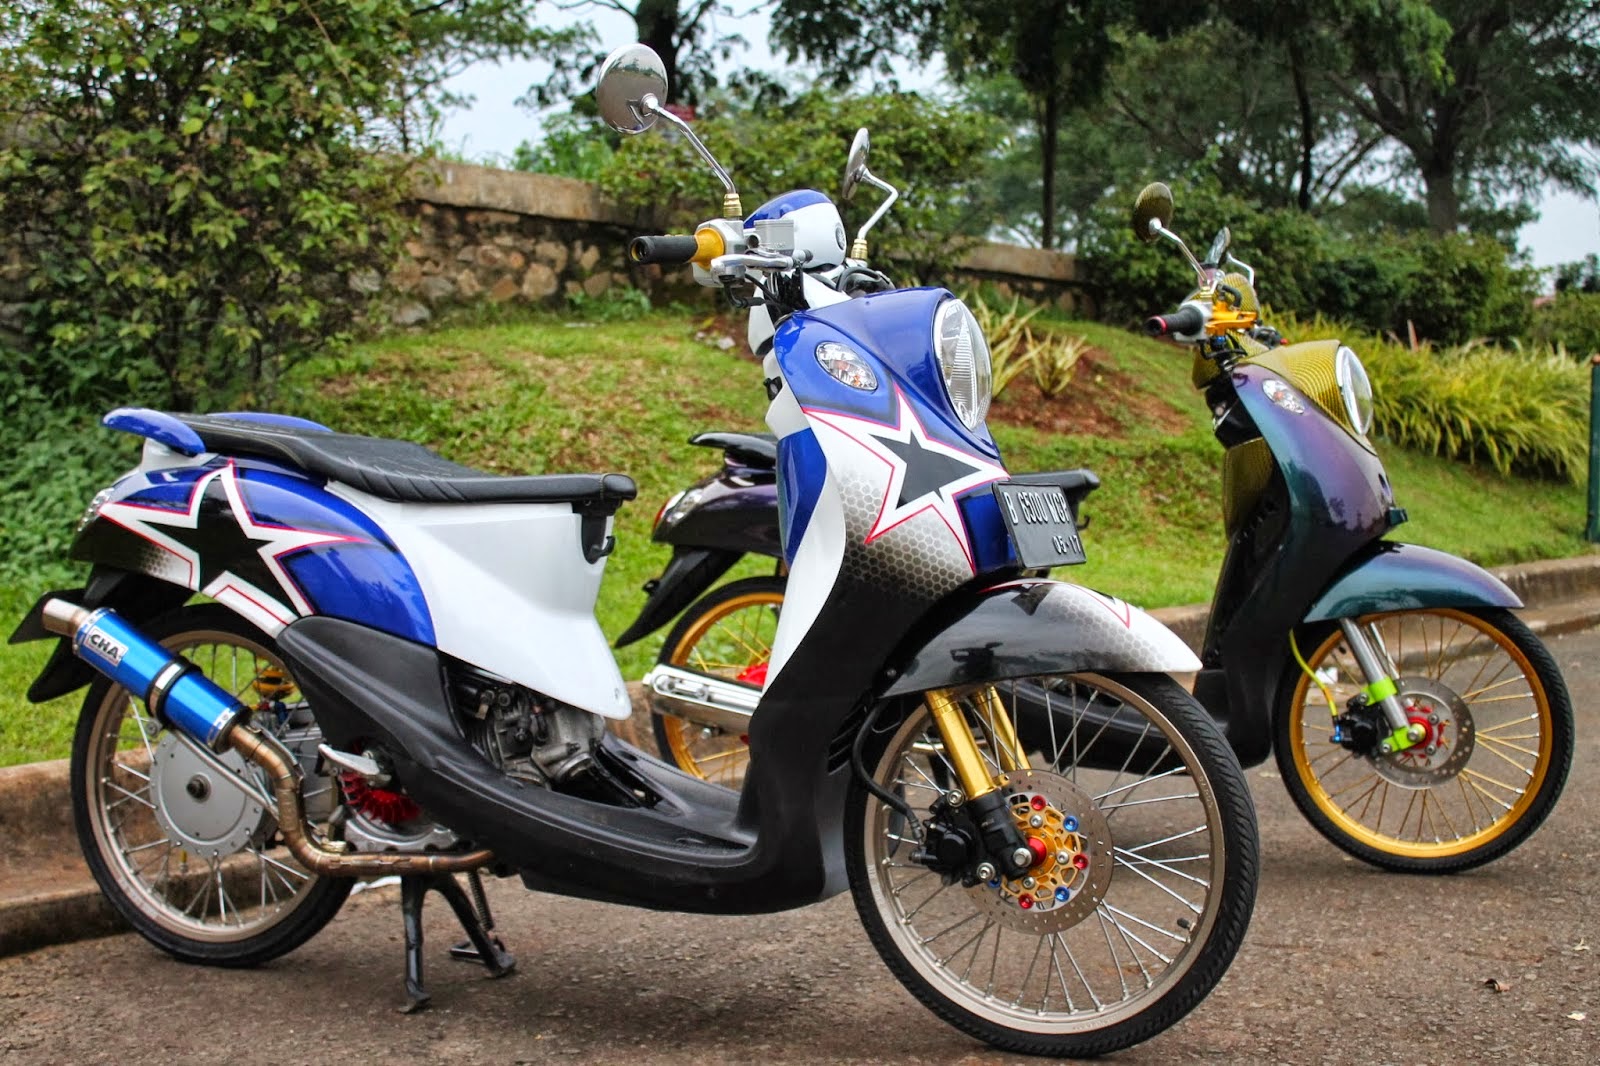 Yamaha Mio Fino Modifikasi Thailand Thecitycyclist